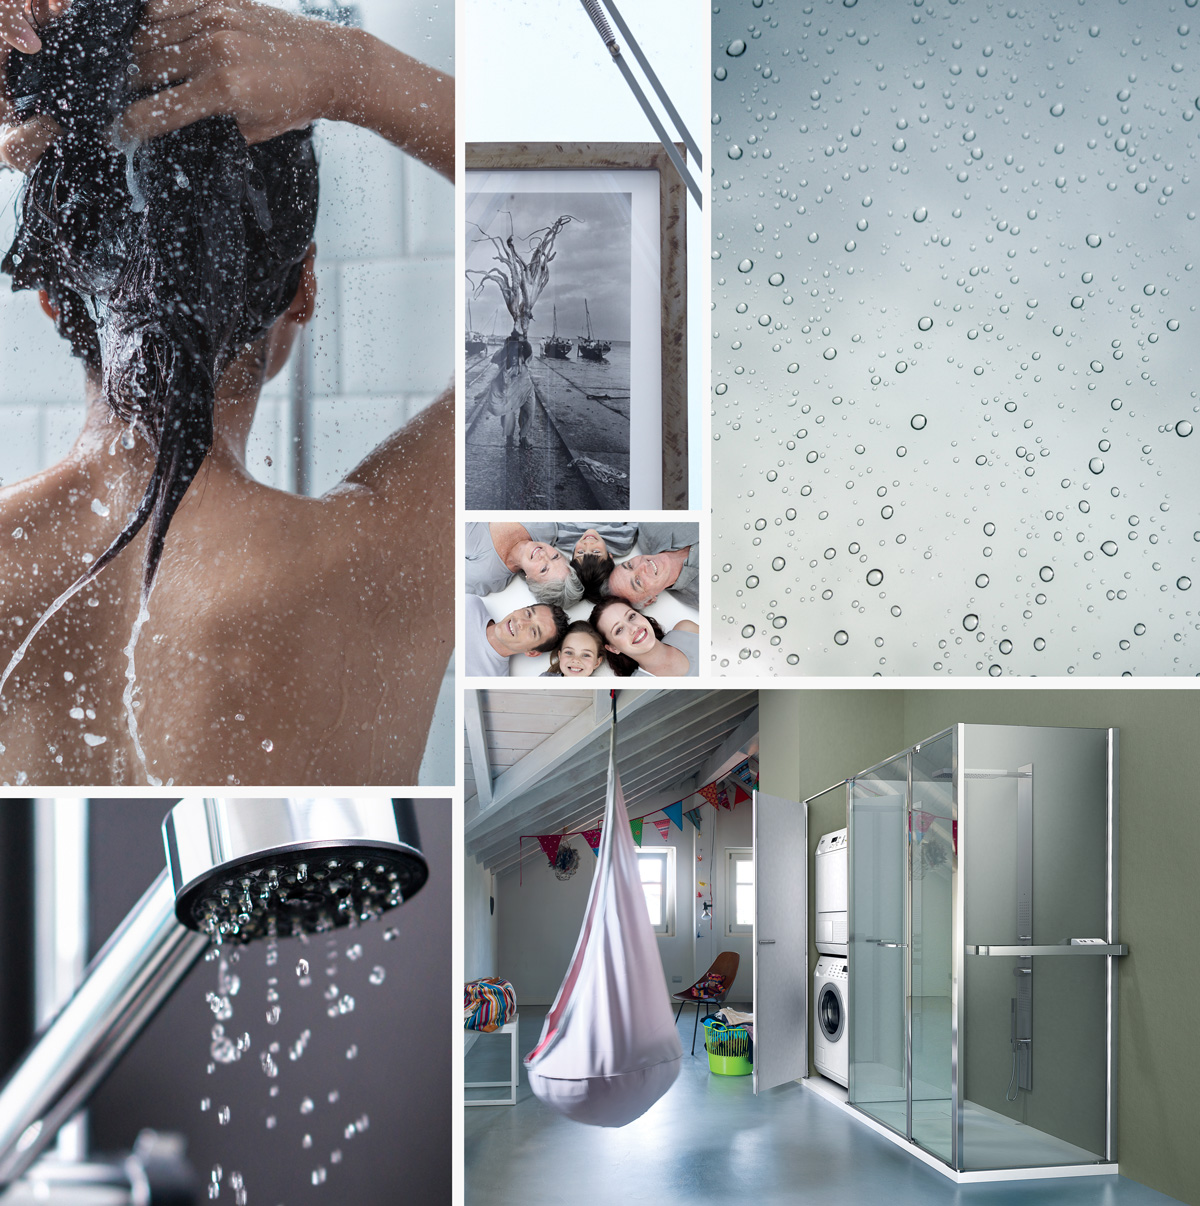 Het ""TPA"" systeem toegepast op de glazen douchewanden zorgt voor een eenvoudige reiniging en vermindert de agressie van kalk en vuil in het algemeen.